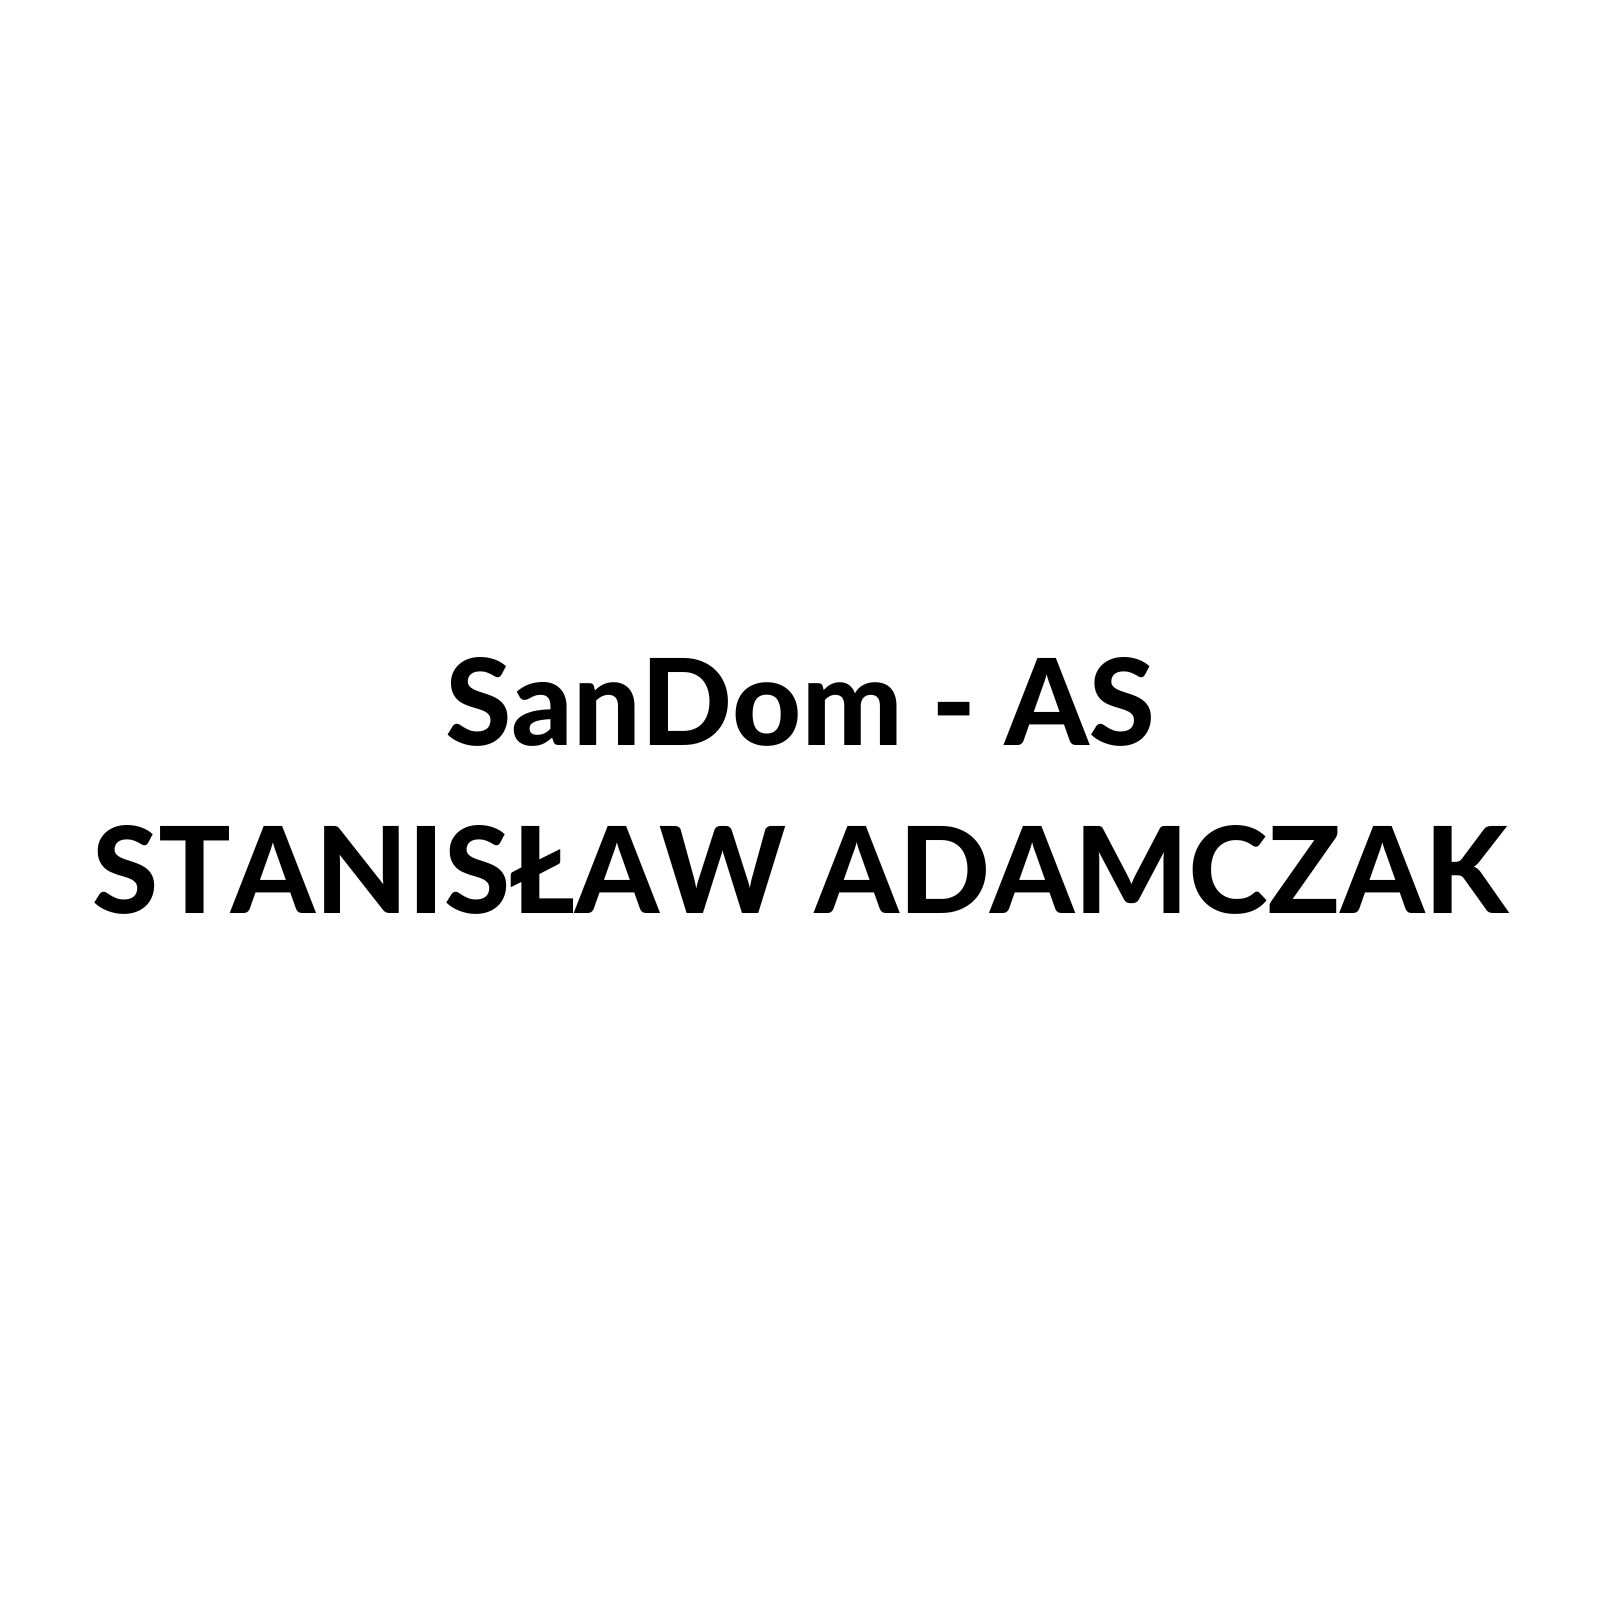 SanDom - AS Stanisław Adamczak